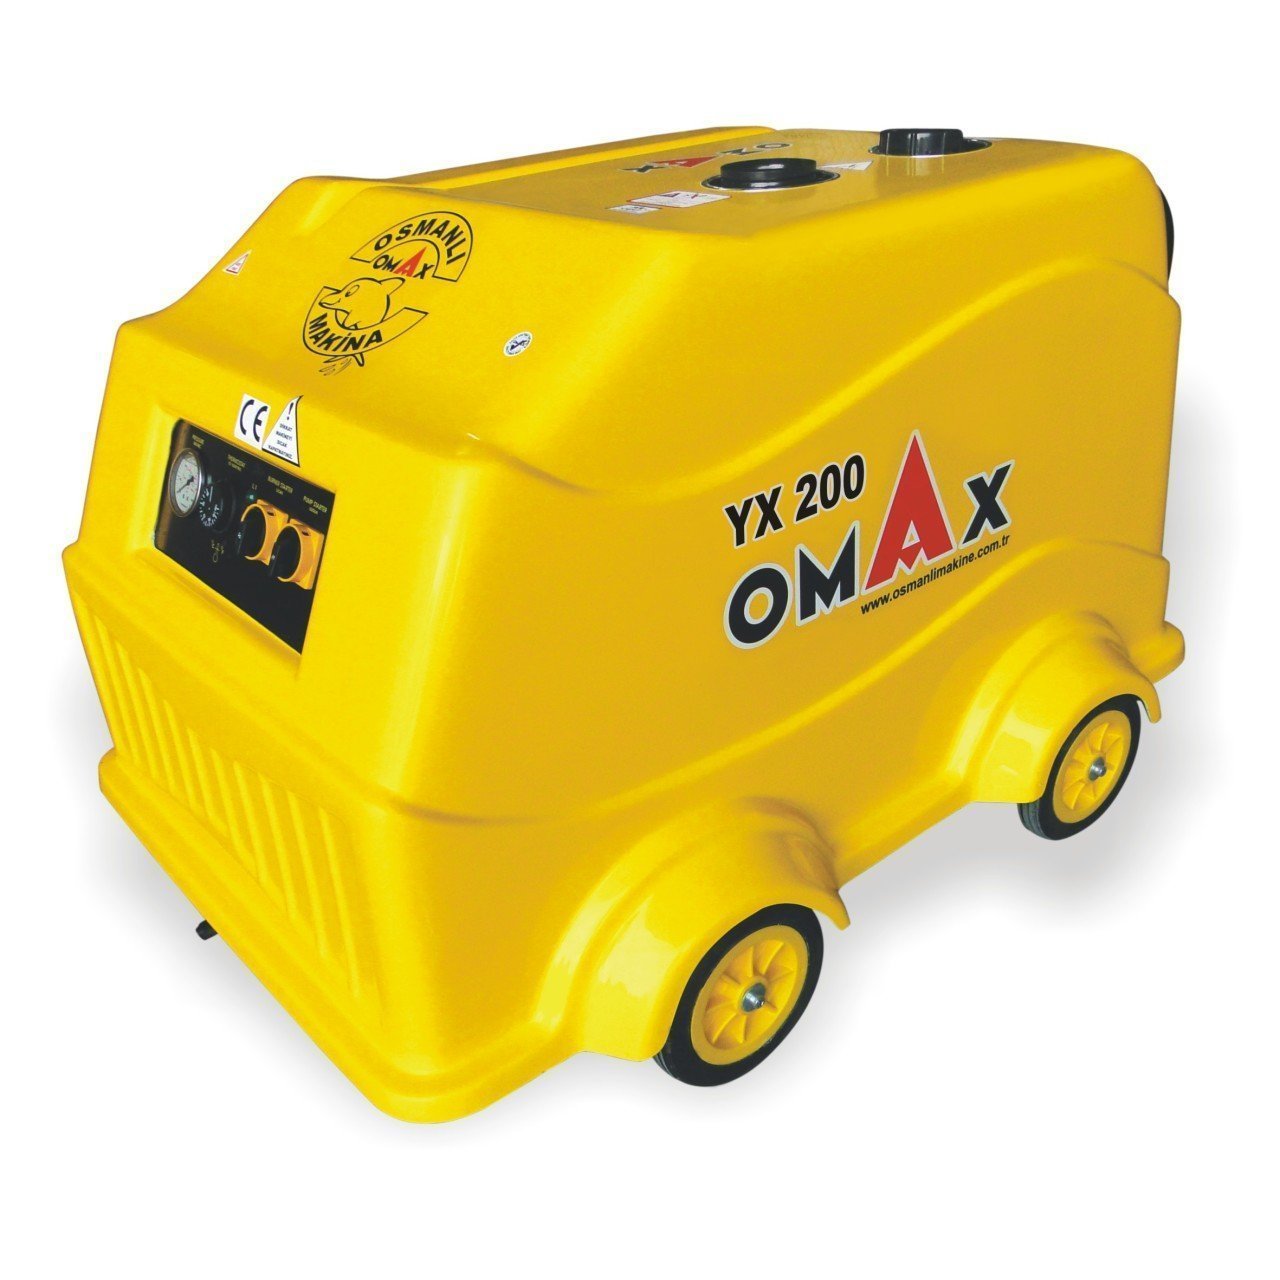 Omax Yx 200 Basınçlı Sıcak Soğuk Yıkama Makinesi 200 Bar Mazotlu